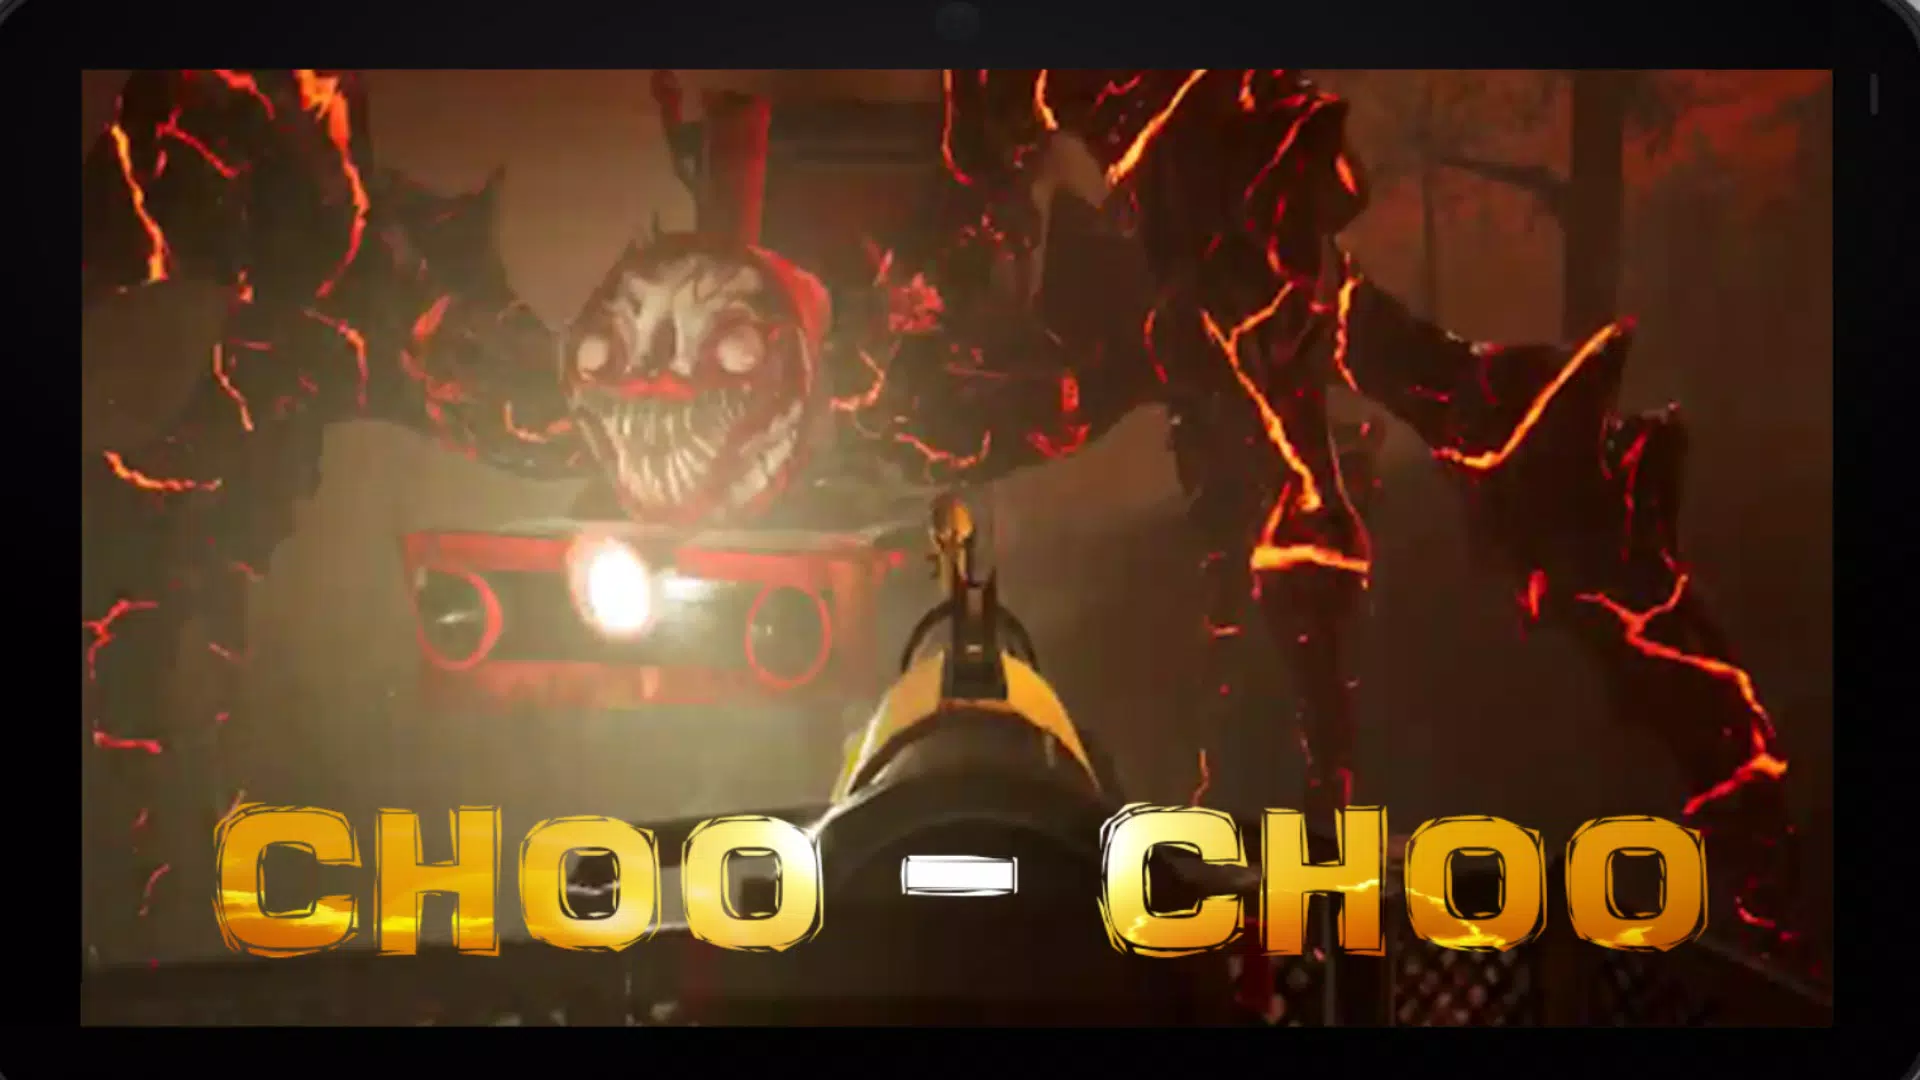 Choo Choo Charles codes [Horror] (August 2023)